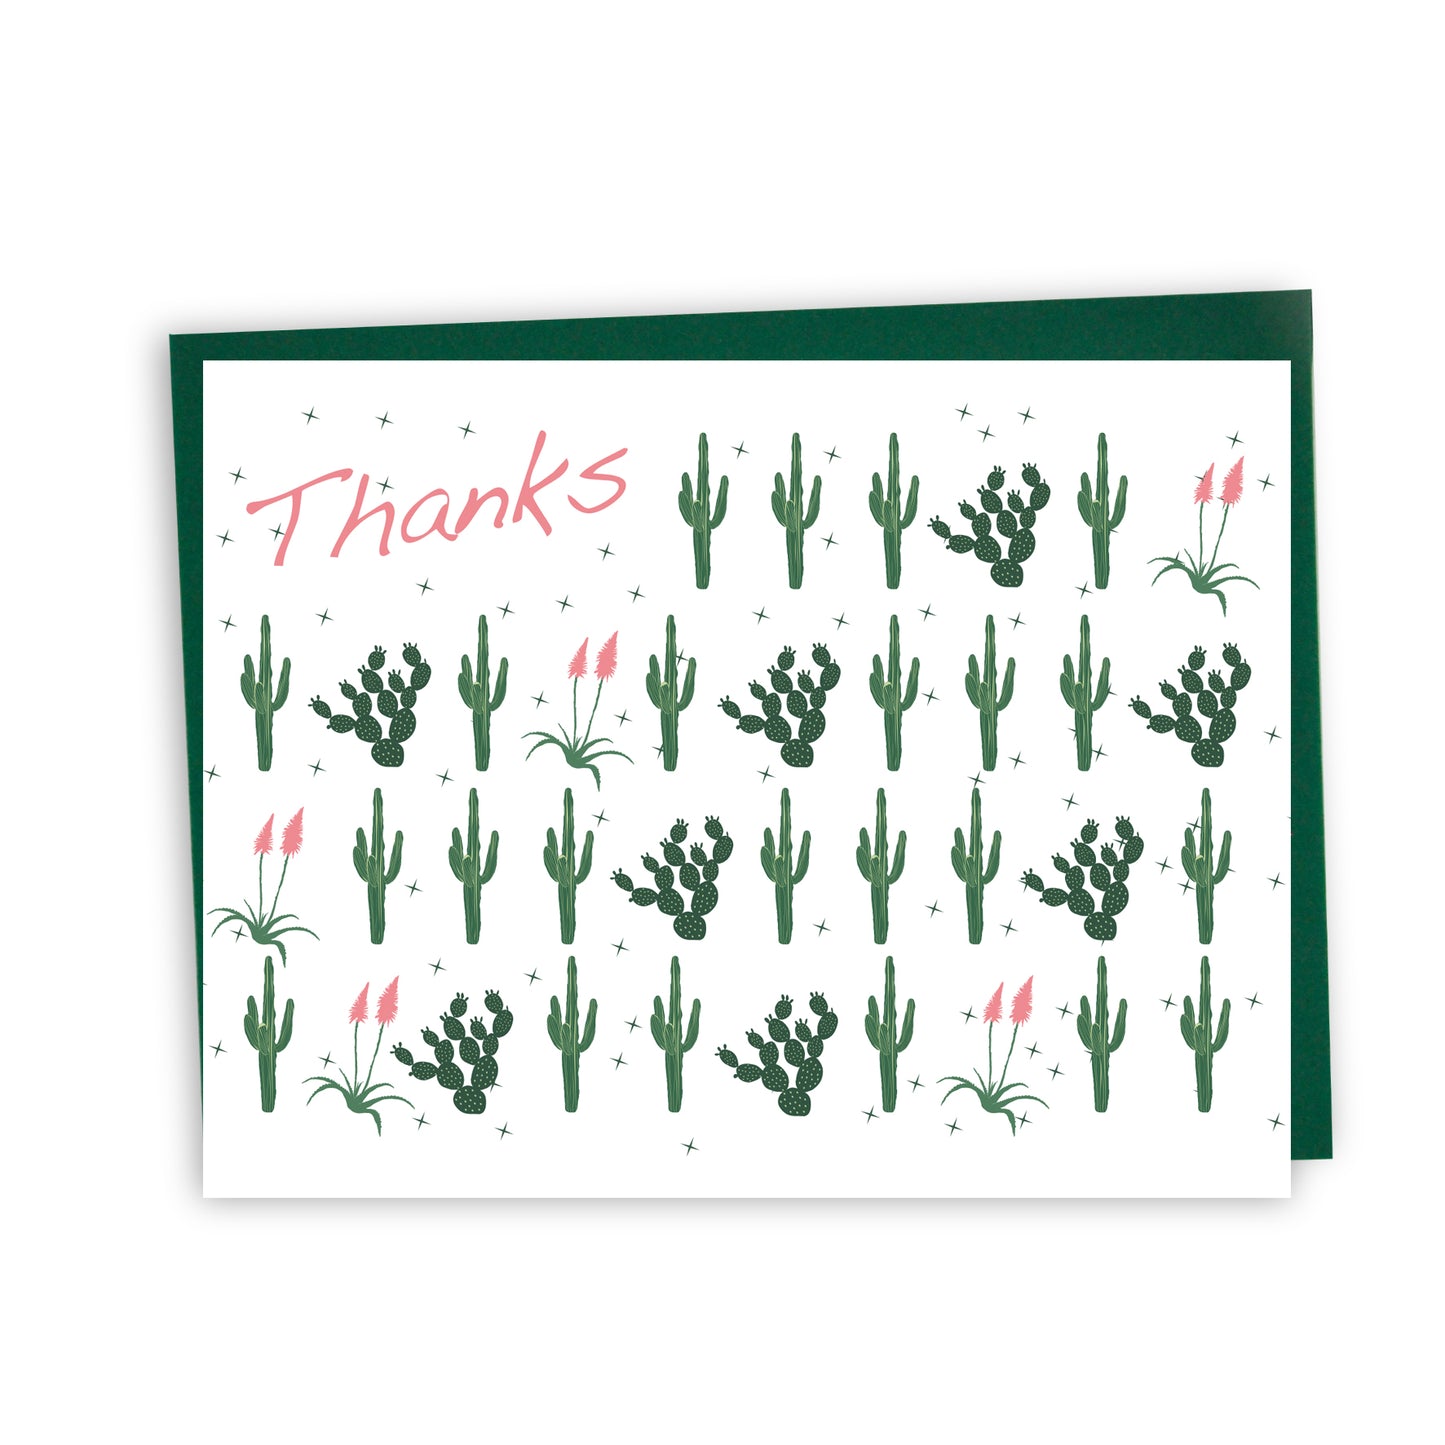 Merci - cactus